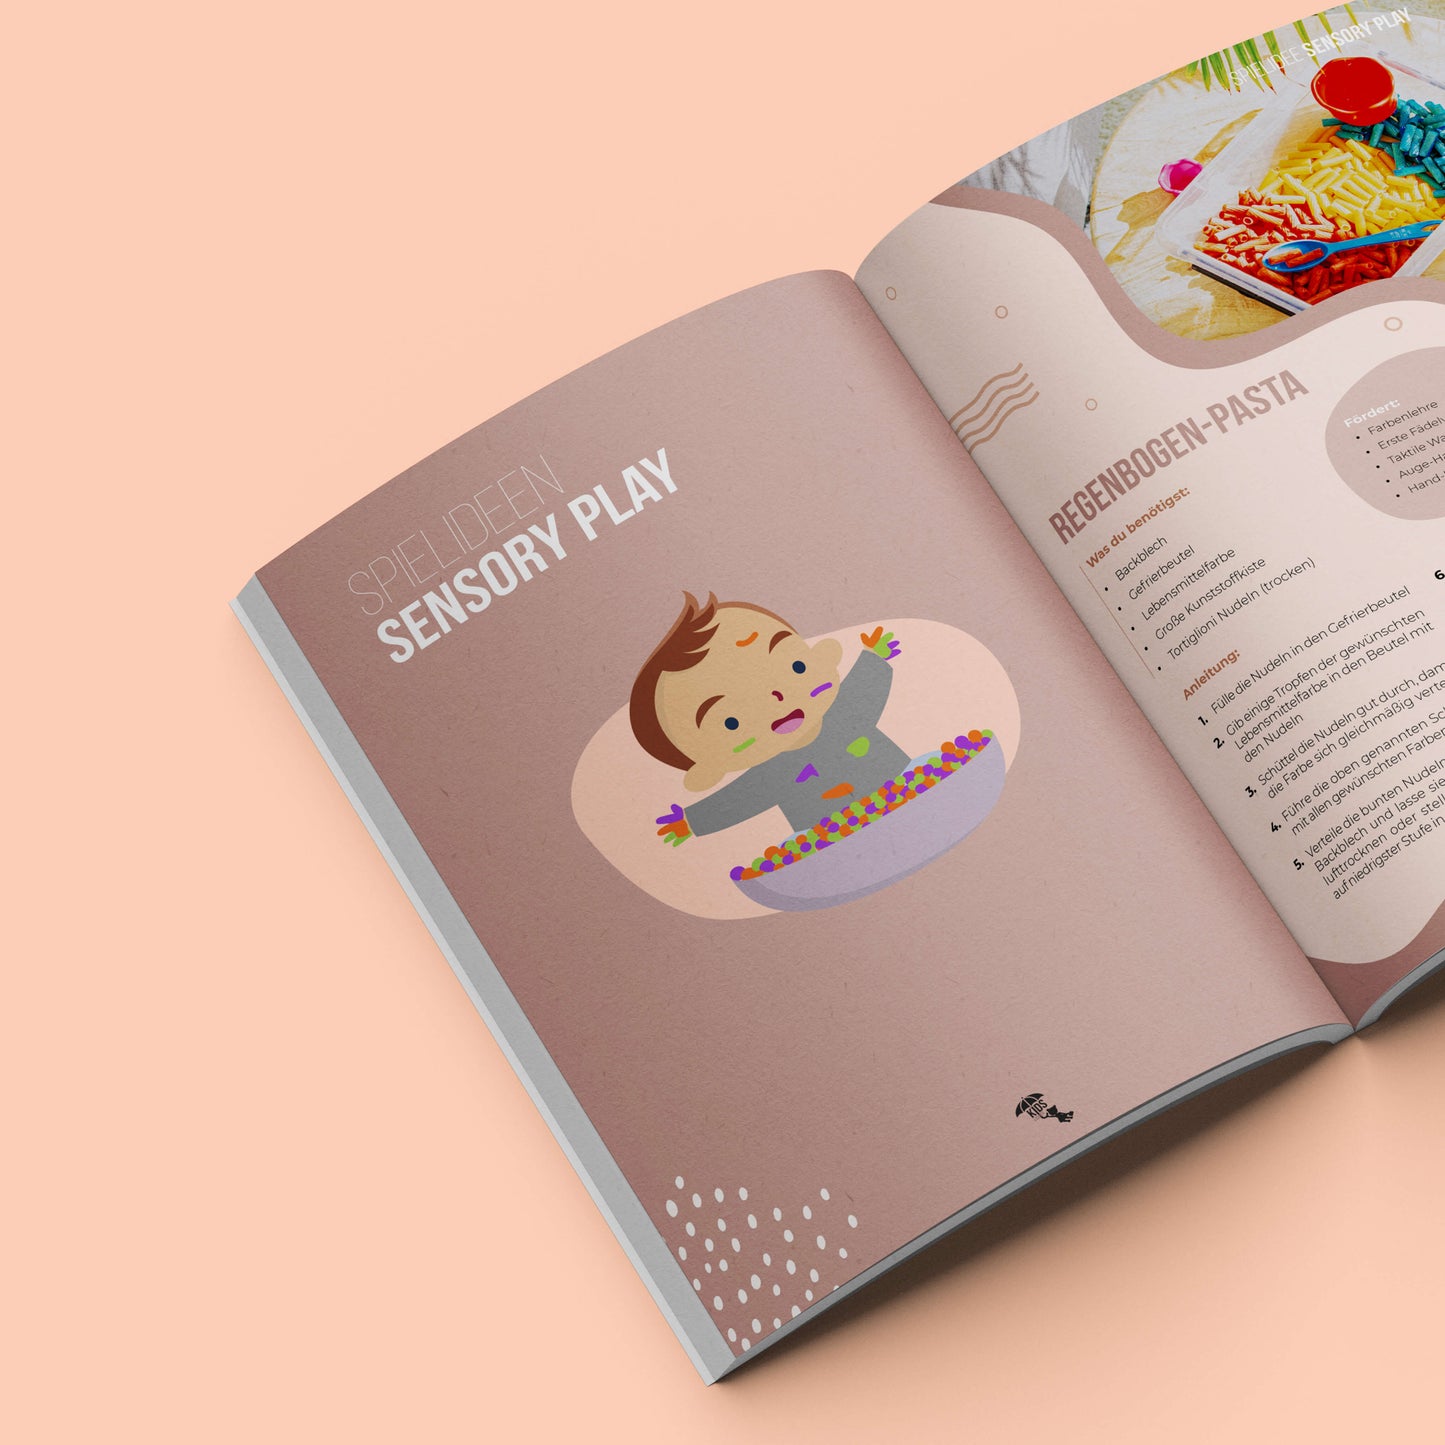 Aufgeschlagenes Magazin mit Idee zur Förderung von Kindern durch Sensory Play Pasta